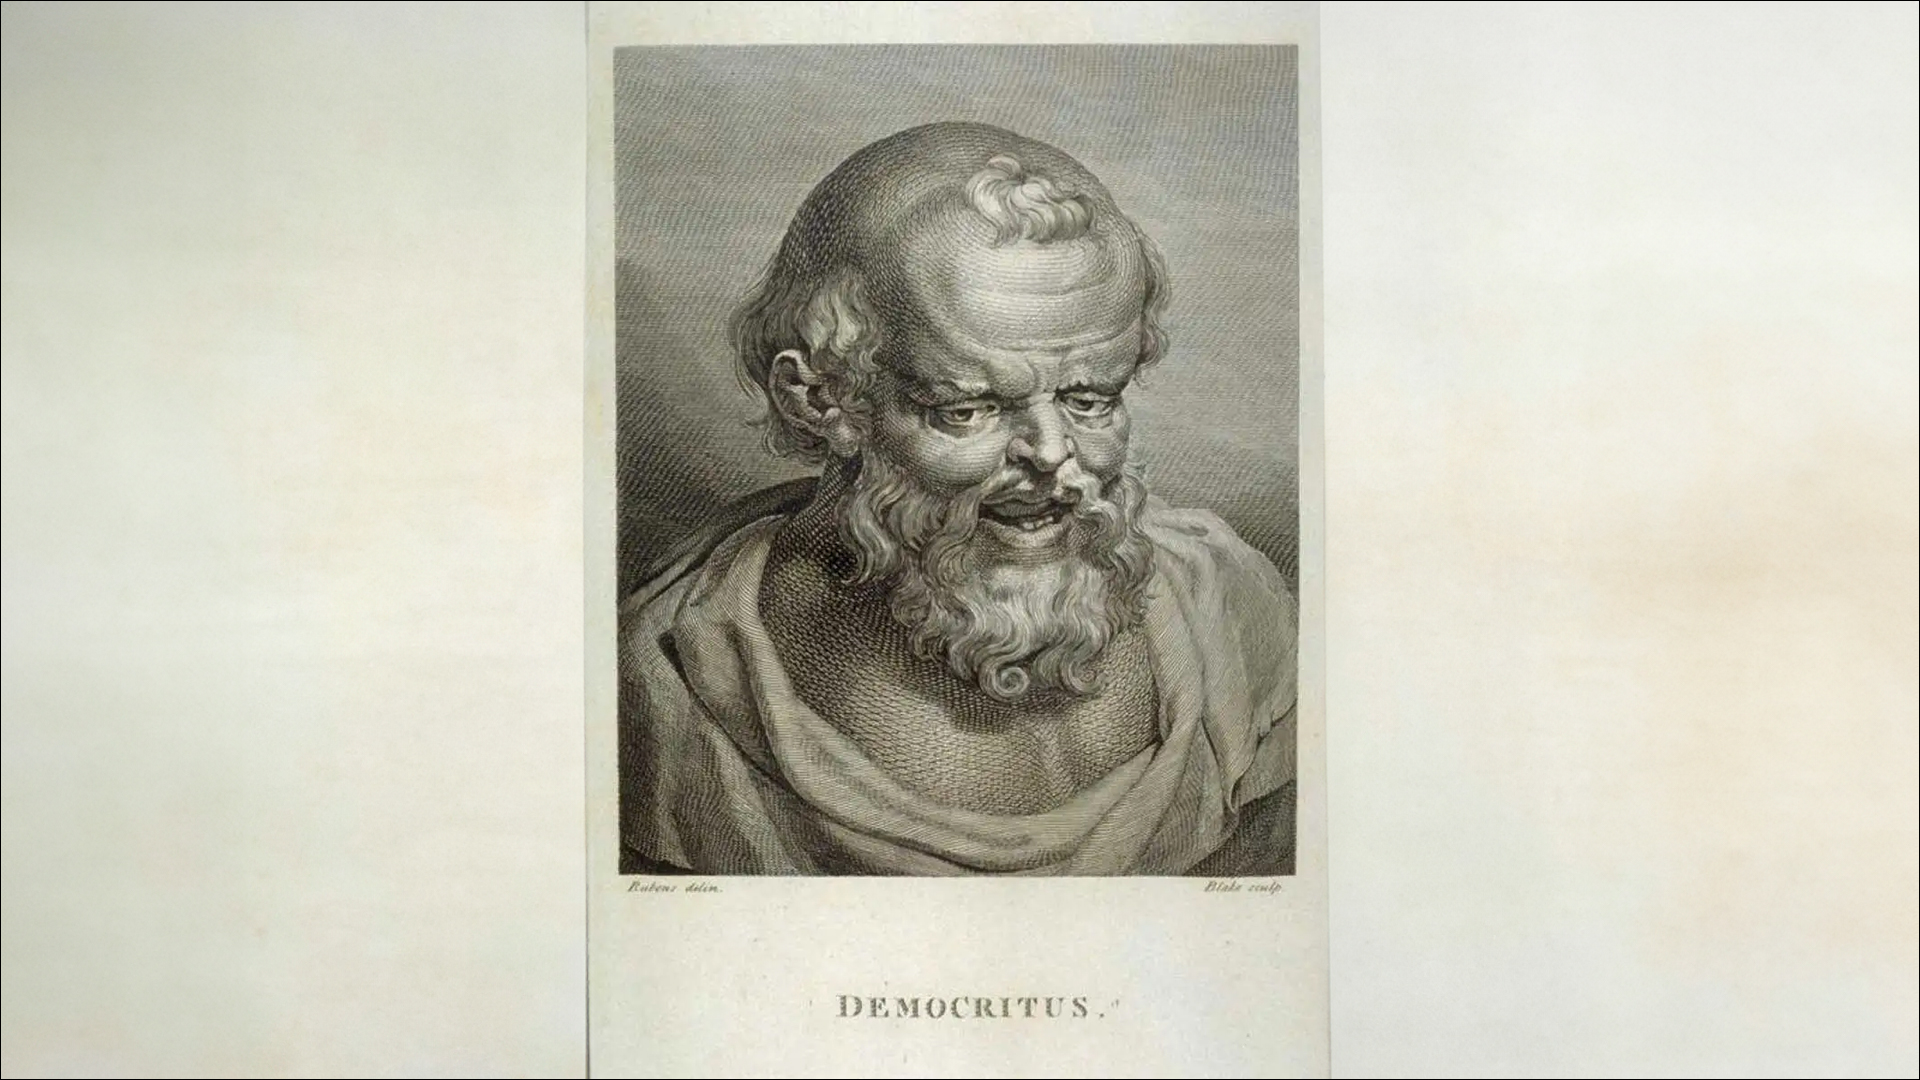 democritus